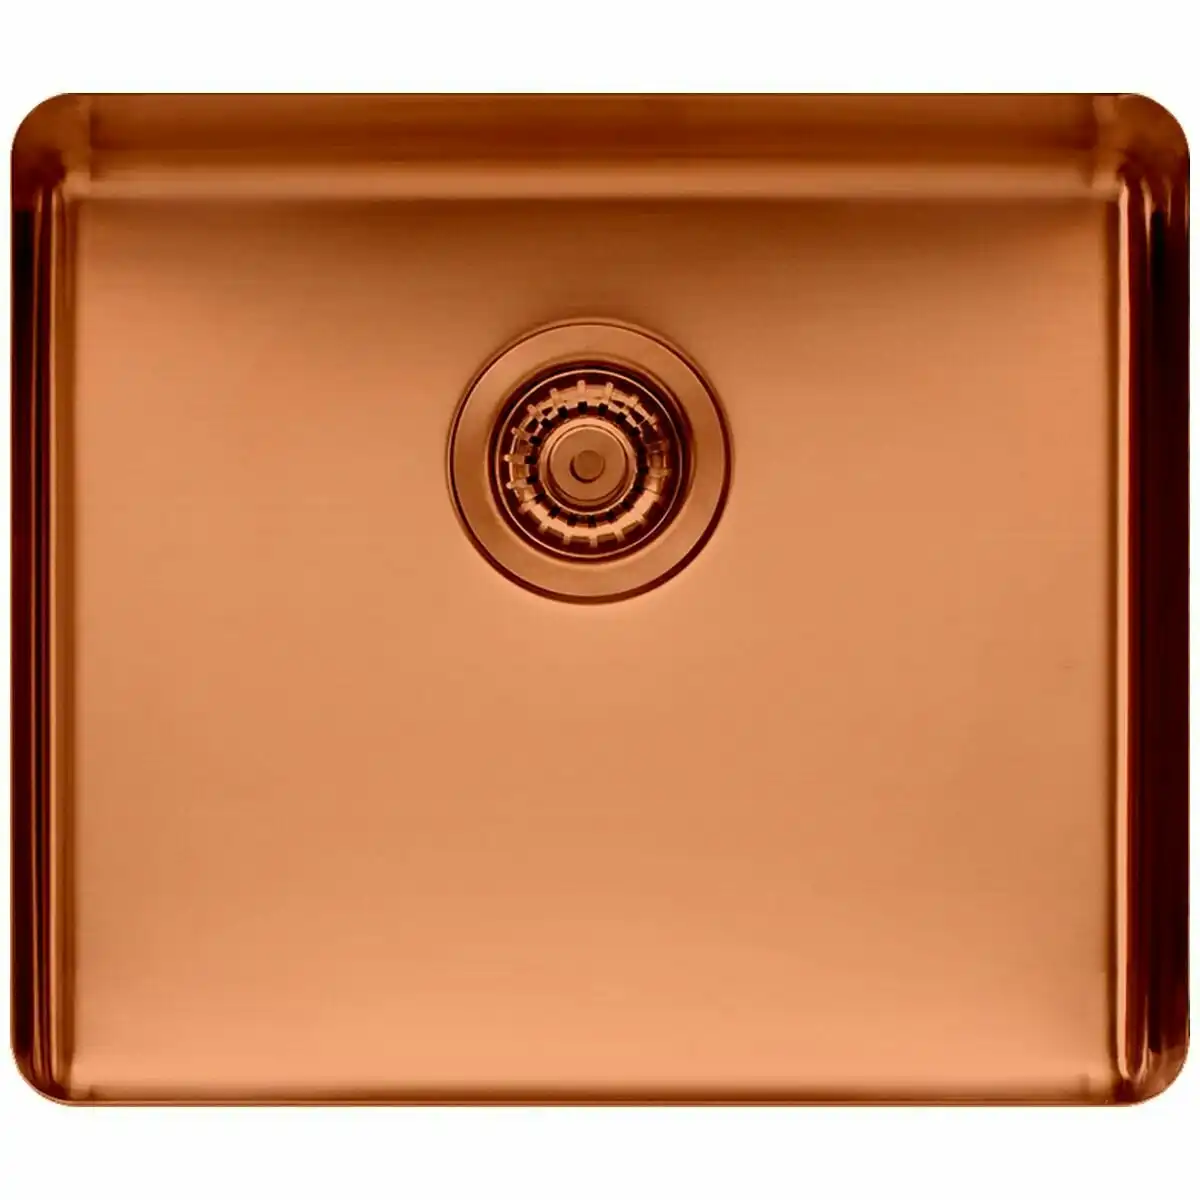 Titan Large Single Bowl Sink Copper